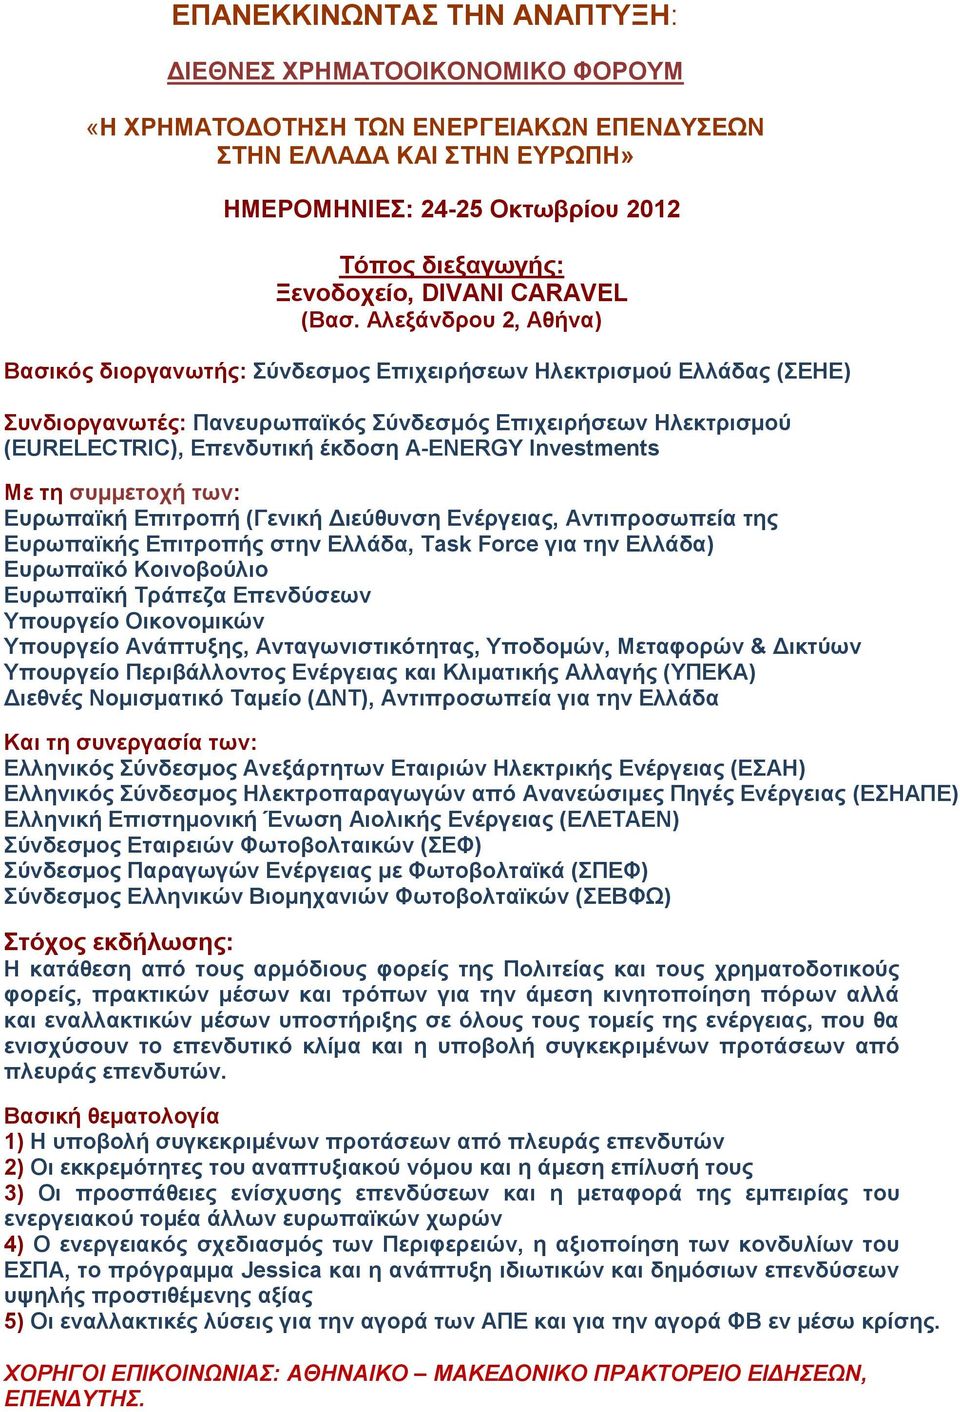 Αλεξάνδρου 2, Αθήνα) Βασικός διοργανωτής: Σύνδεσμος Επιχειρήσεων Ηλεκτρισμού Ελλάδας (ΣΕΗΕ) Συνδιοργανωτές: Πανευρωπαϊκός Σύνδεσμός Επιχειρήσεων Ηλεκτρισμού (EURELECTRIC), Επενδυτική έκδοση Α-ENERGY